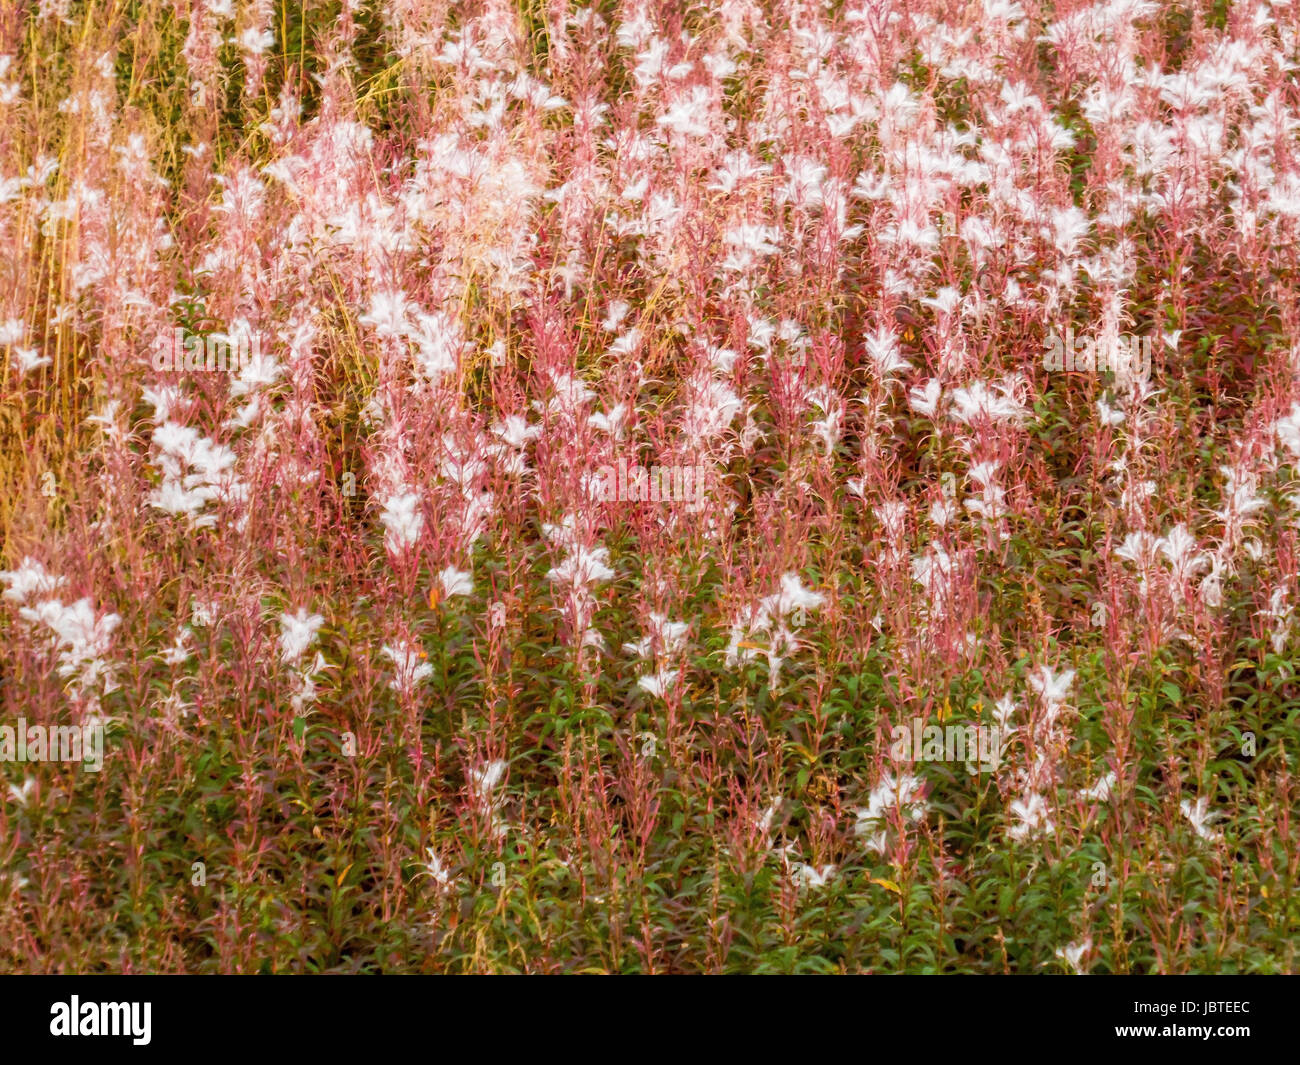 Weidenröschen im Herbst, Epilobium sp. / Willow-Herb in autumn, Epilobium sp. Stock Photo